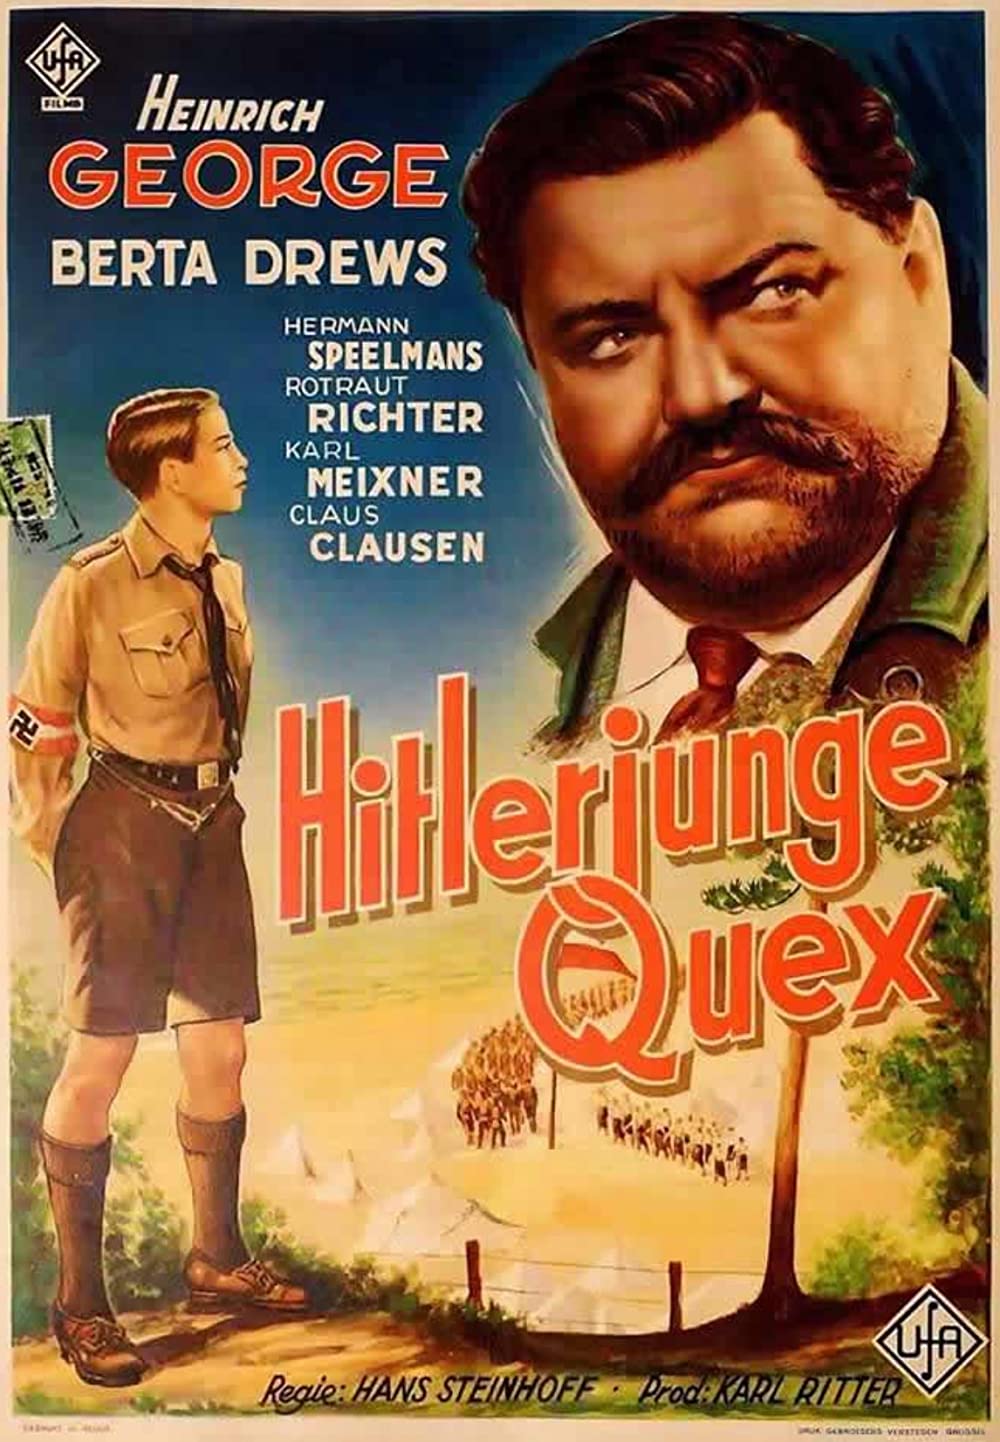 Filmbeschreibung zu Hitlerjunge Quex. Ein Film vom Opfergeist der deutschen Jugend.